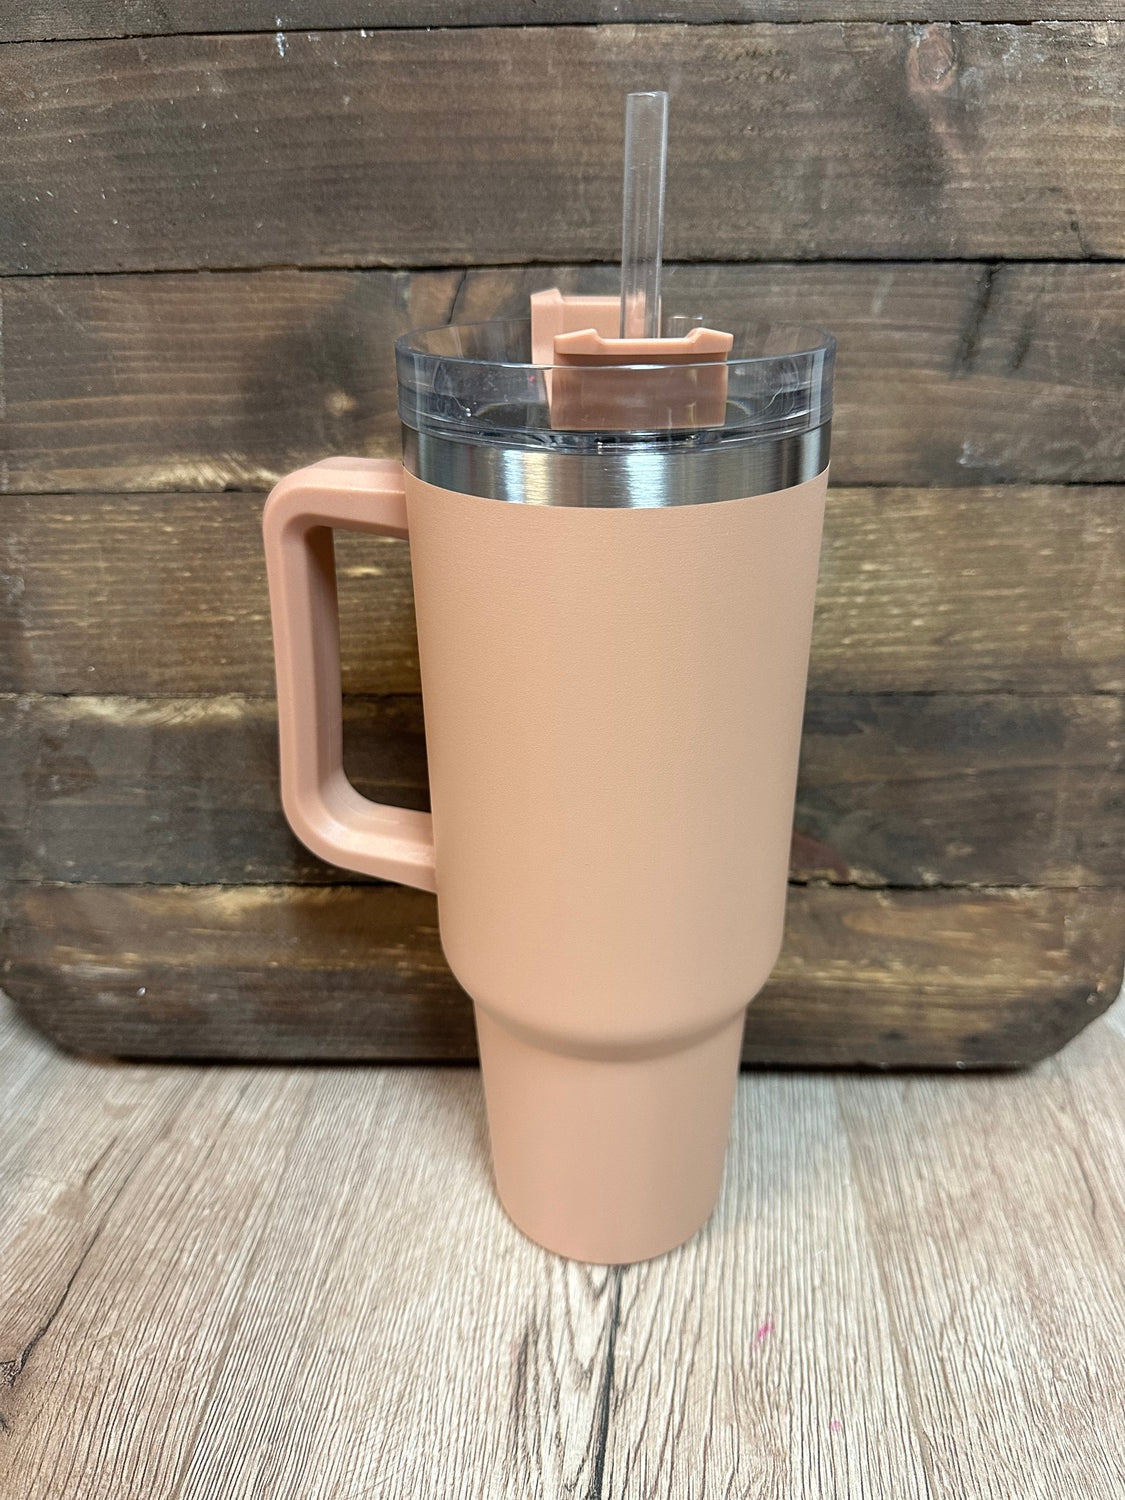 40oz Coffee Mug Tumbler with Handle.Insulated Travel Mug with Lid